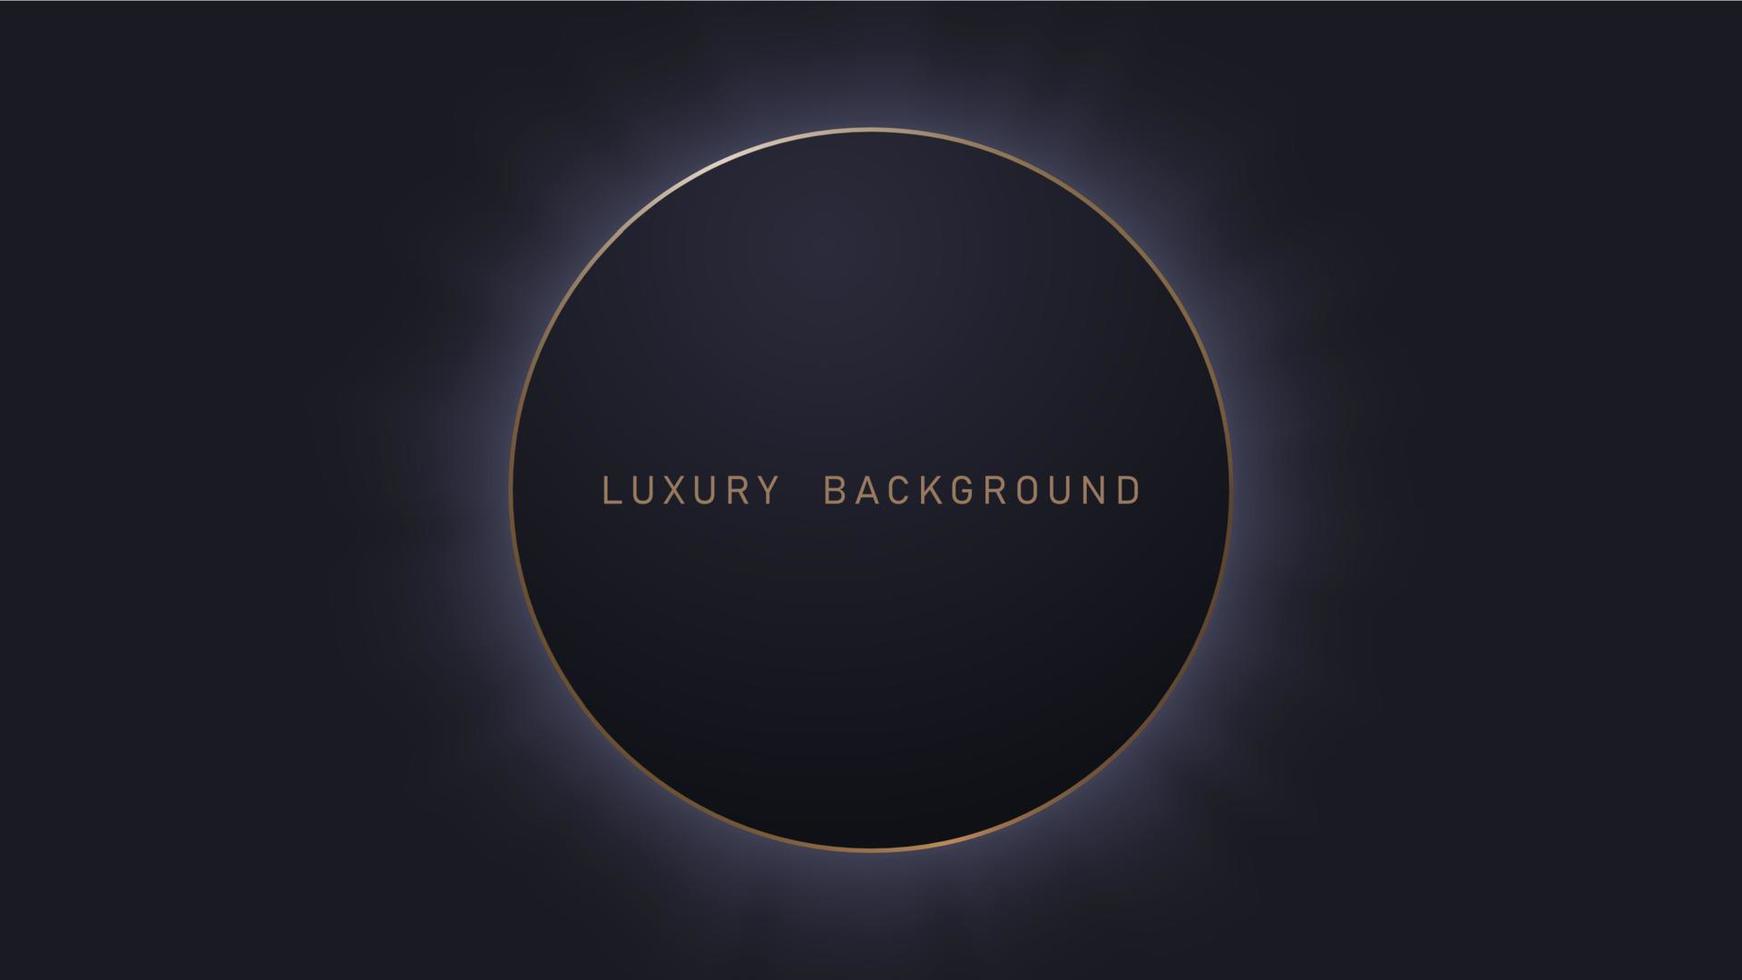 schwarz Luxus Hintergrund mit Licht Elemente, Vorlage zum Ihre Design vektor